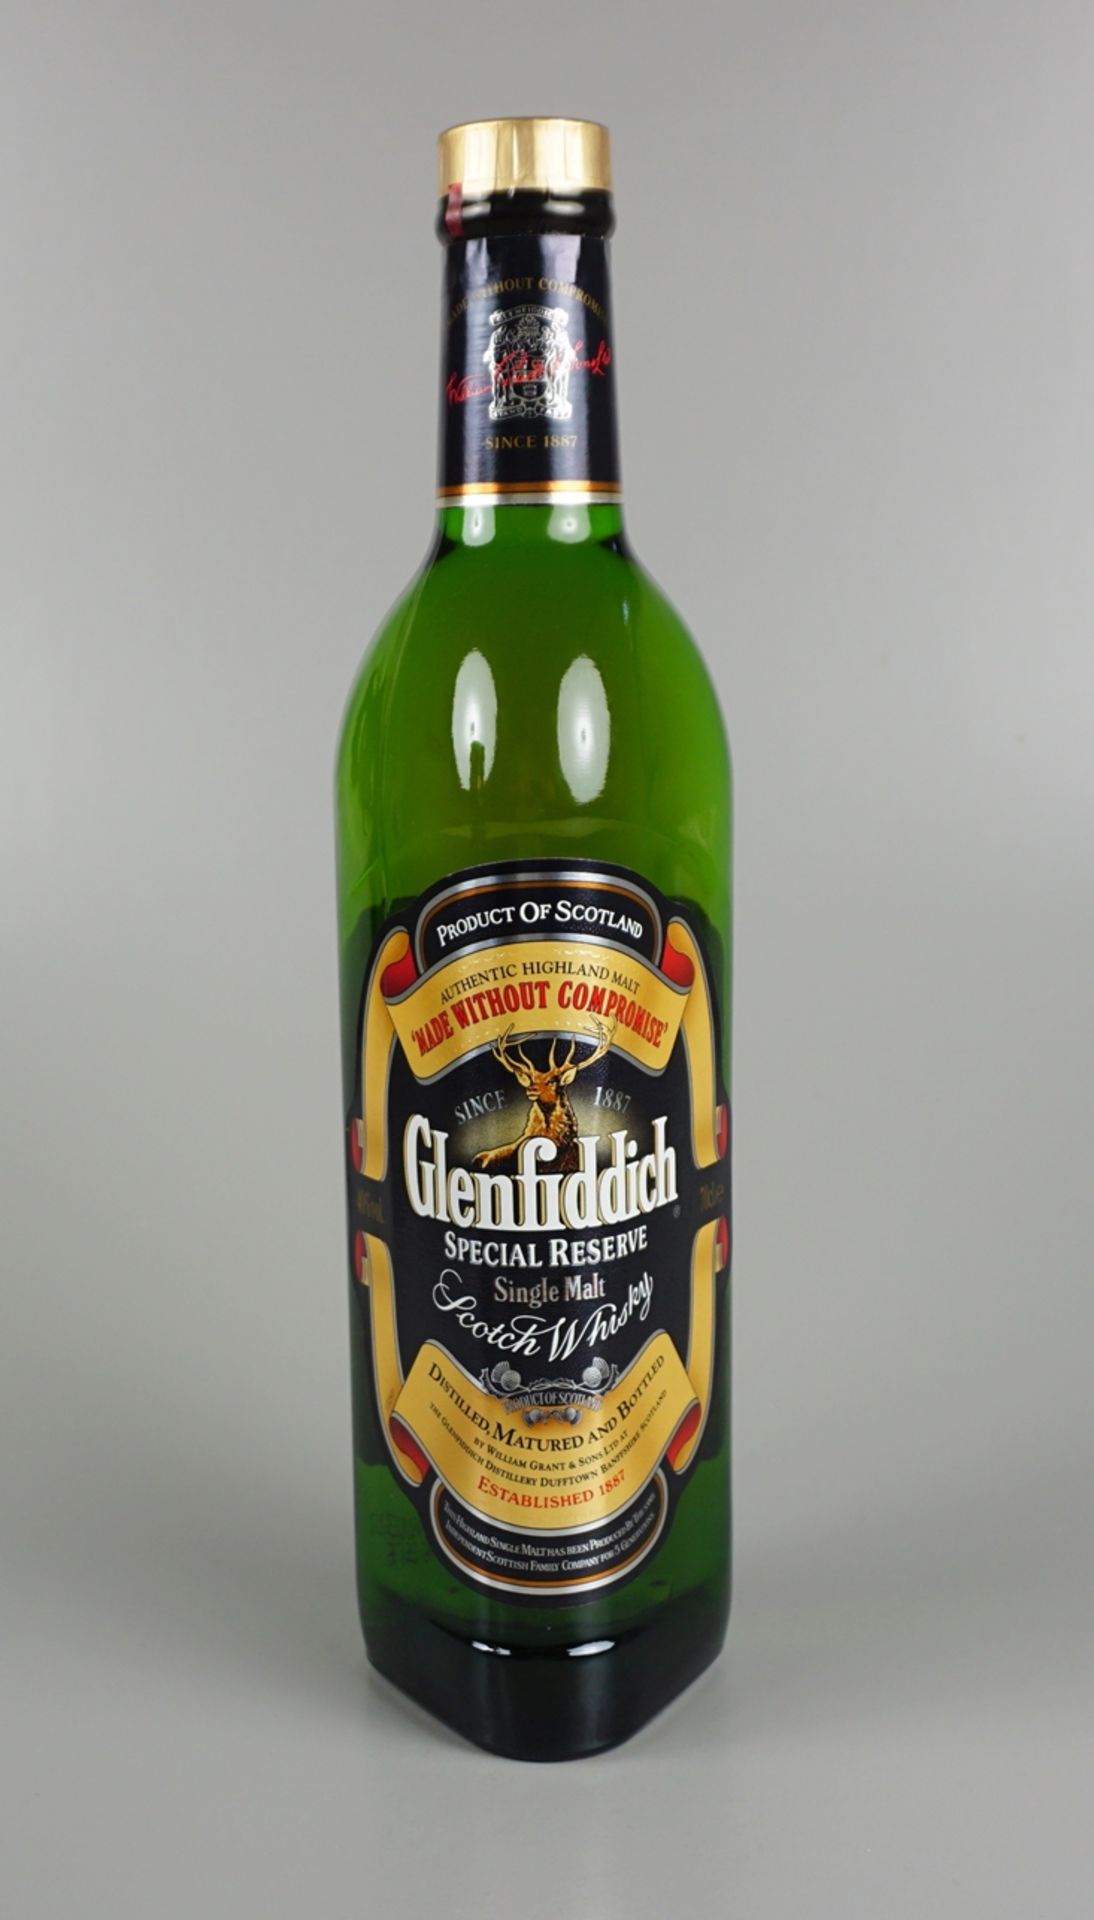 Glenfiddich, Special Reserve, Single Malt Scotch Whisky, Schottland - Bild 2 aus 3